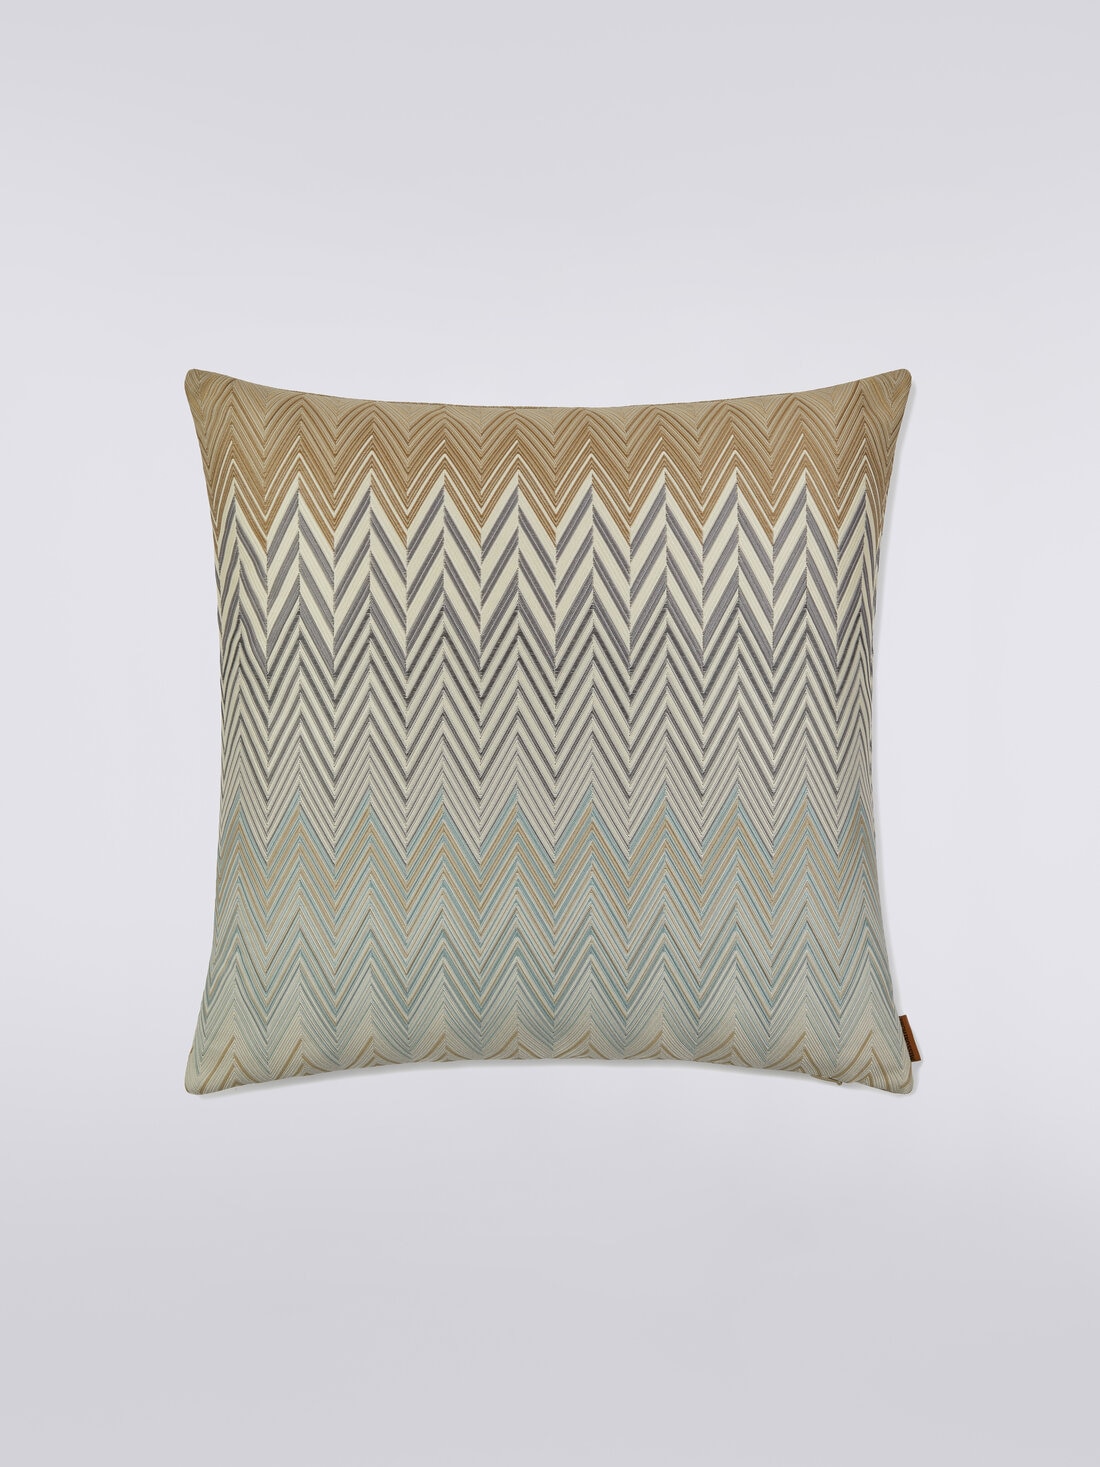 Bastia cushion 40x40 cm, Multicoloured  - 8051275581642 - 0